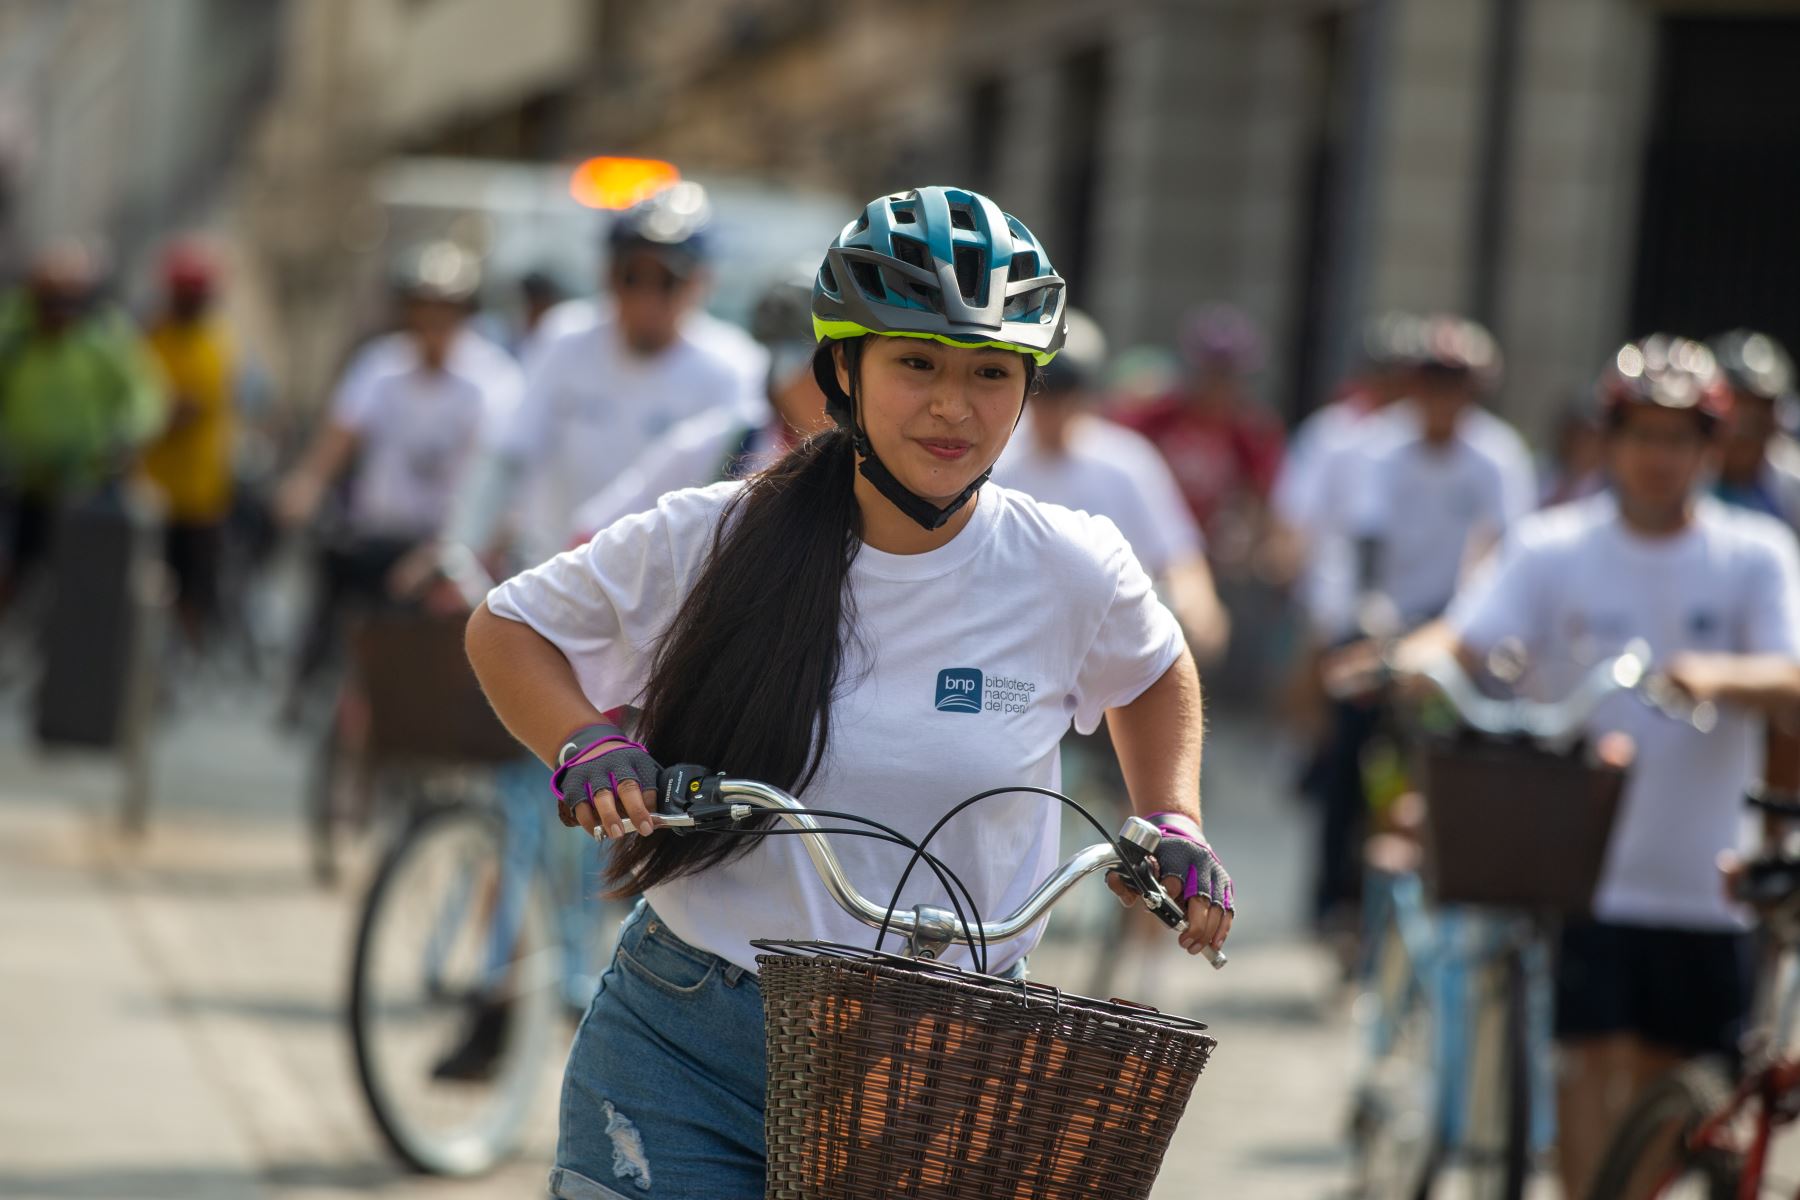 Los amantes de la bicicleta tendrán la oportunidad de disfrutar de un día diferente en compañía de sus seres queridos, rodeados de un entorno natural y saludable. Foto: ANDINA/Andrés Valle